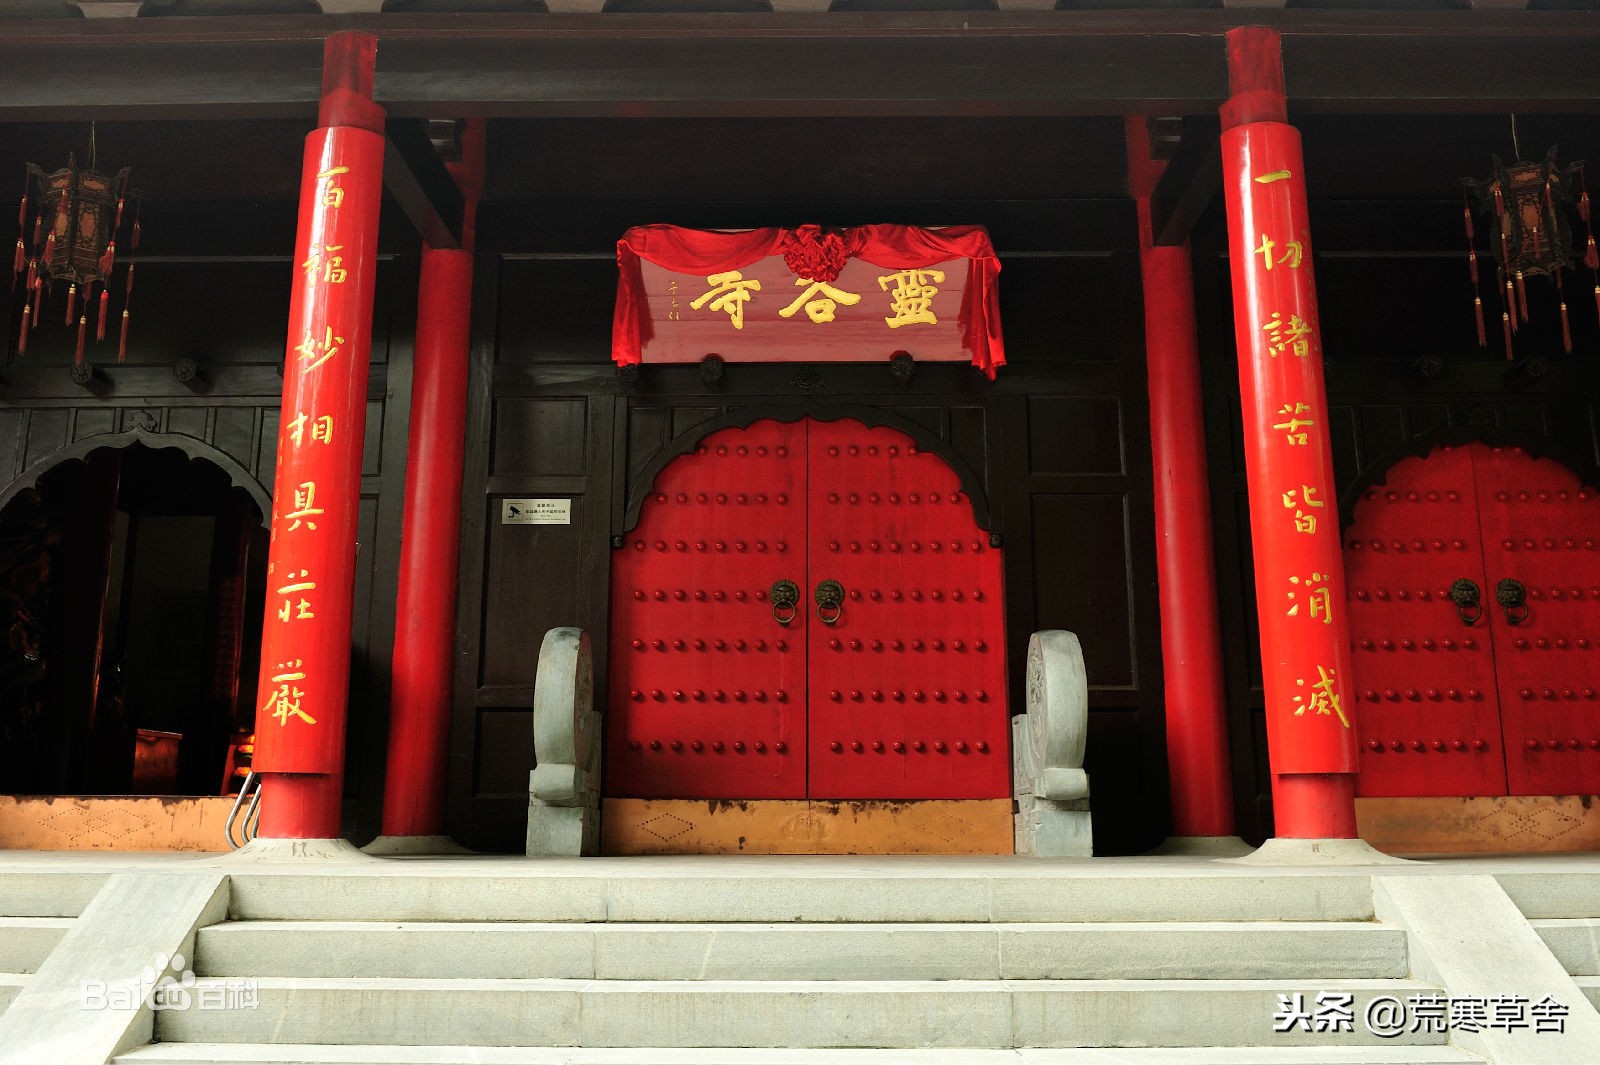 “天下第一禅林”——南京灵谷寺